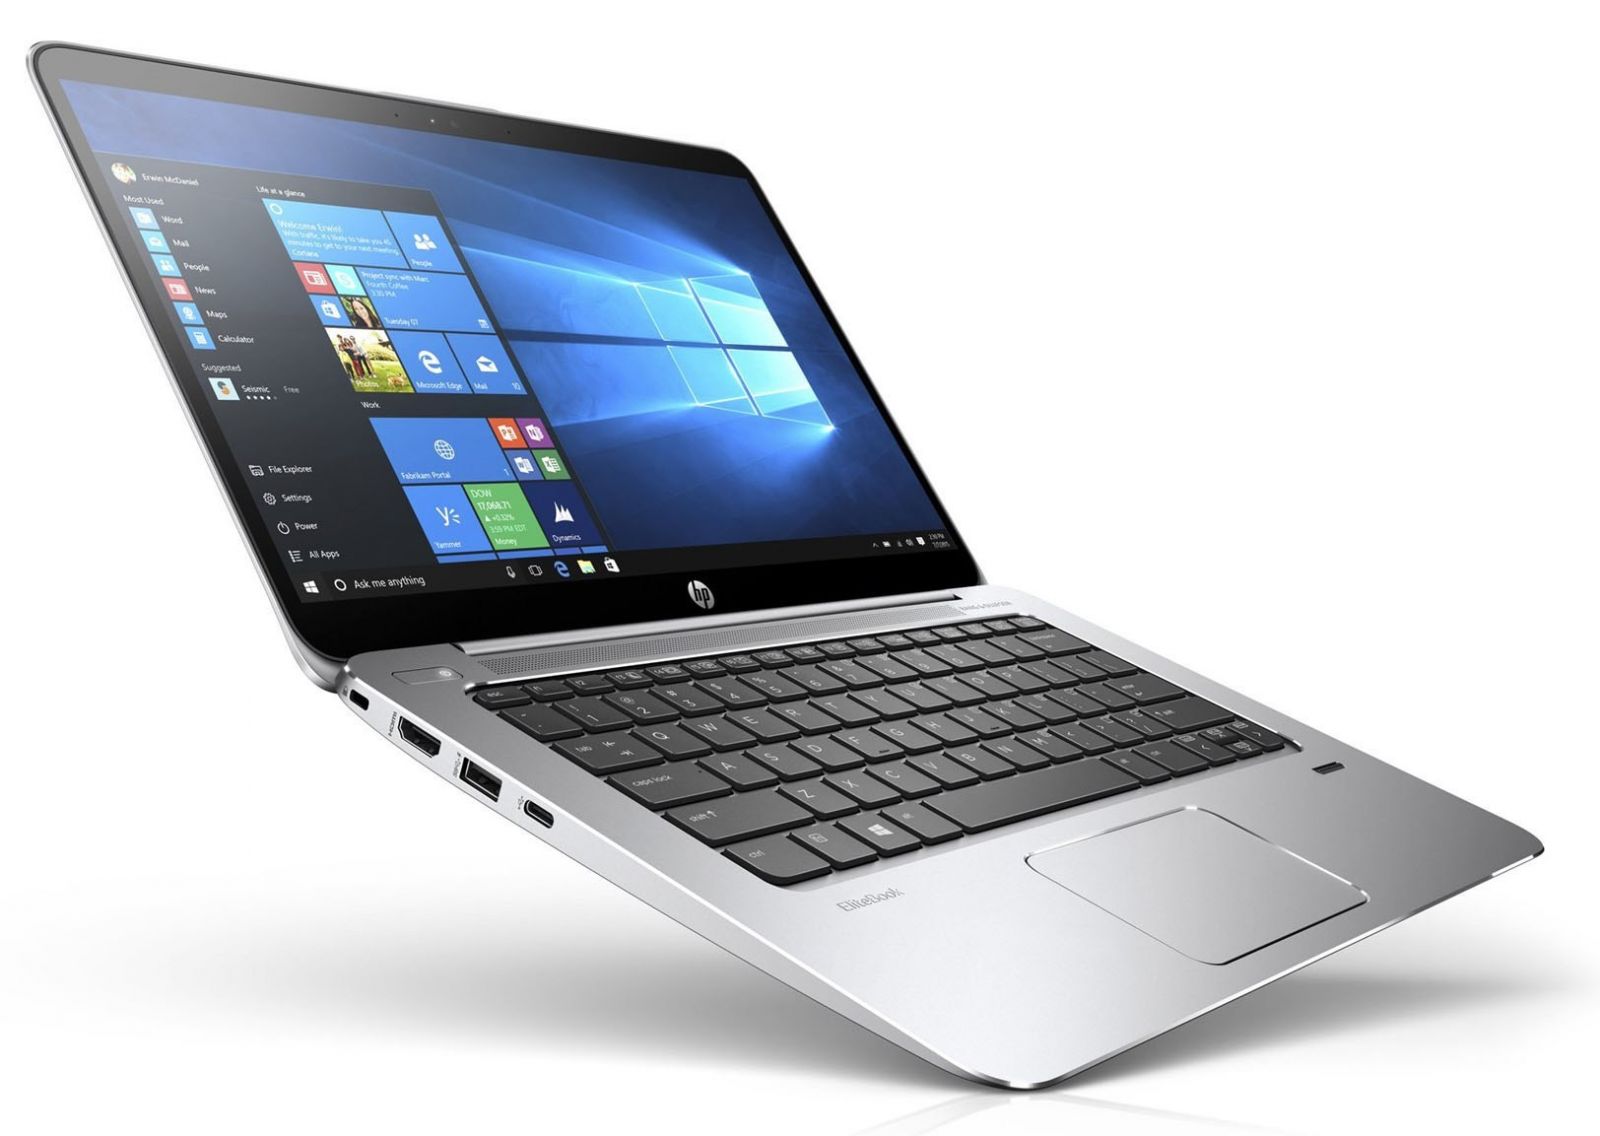 Thiết kế HP EliteBook 1030 G1 mỏng bền bỉ